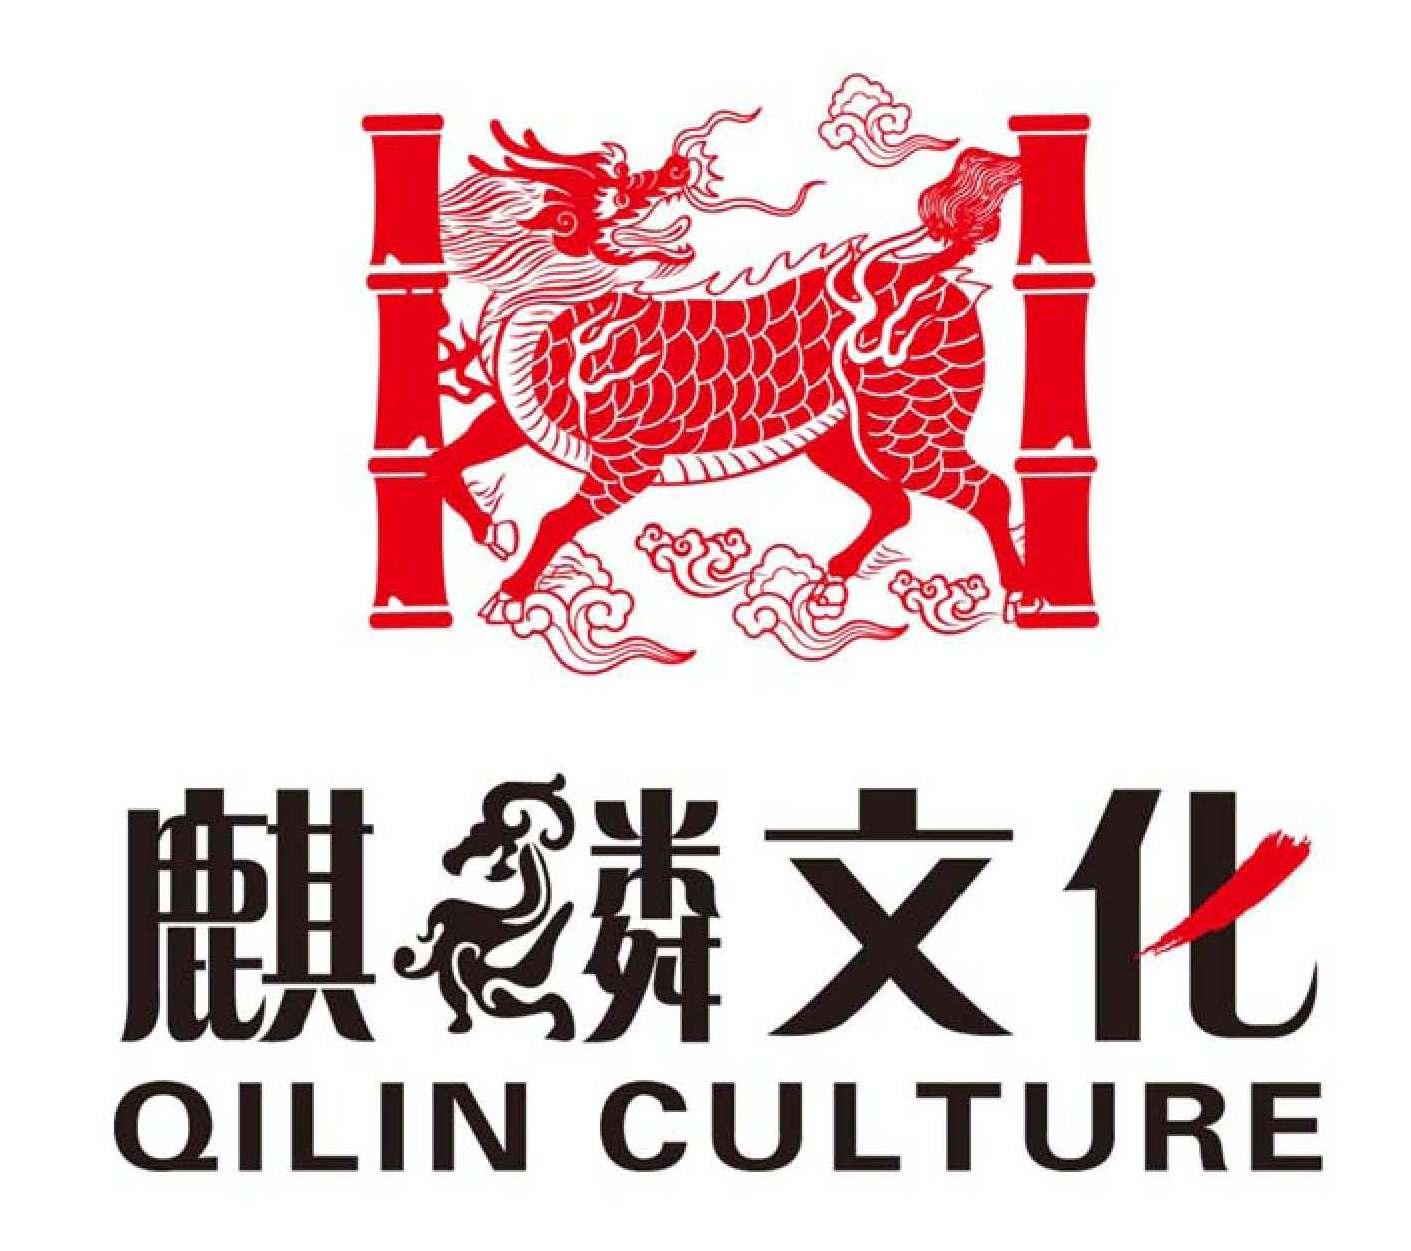  em>麒麟 /em>文化 qilin culture